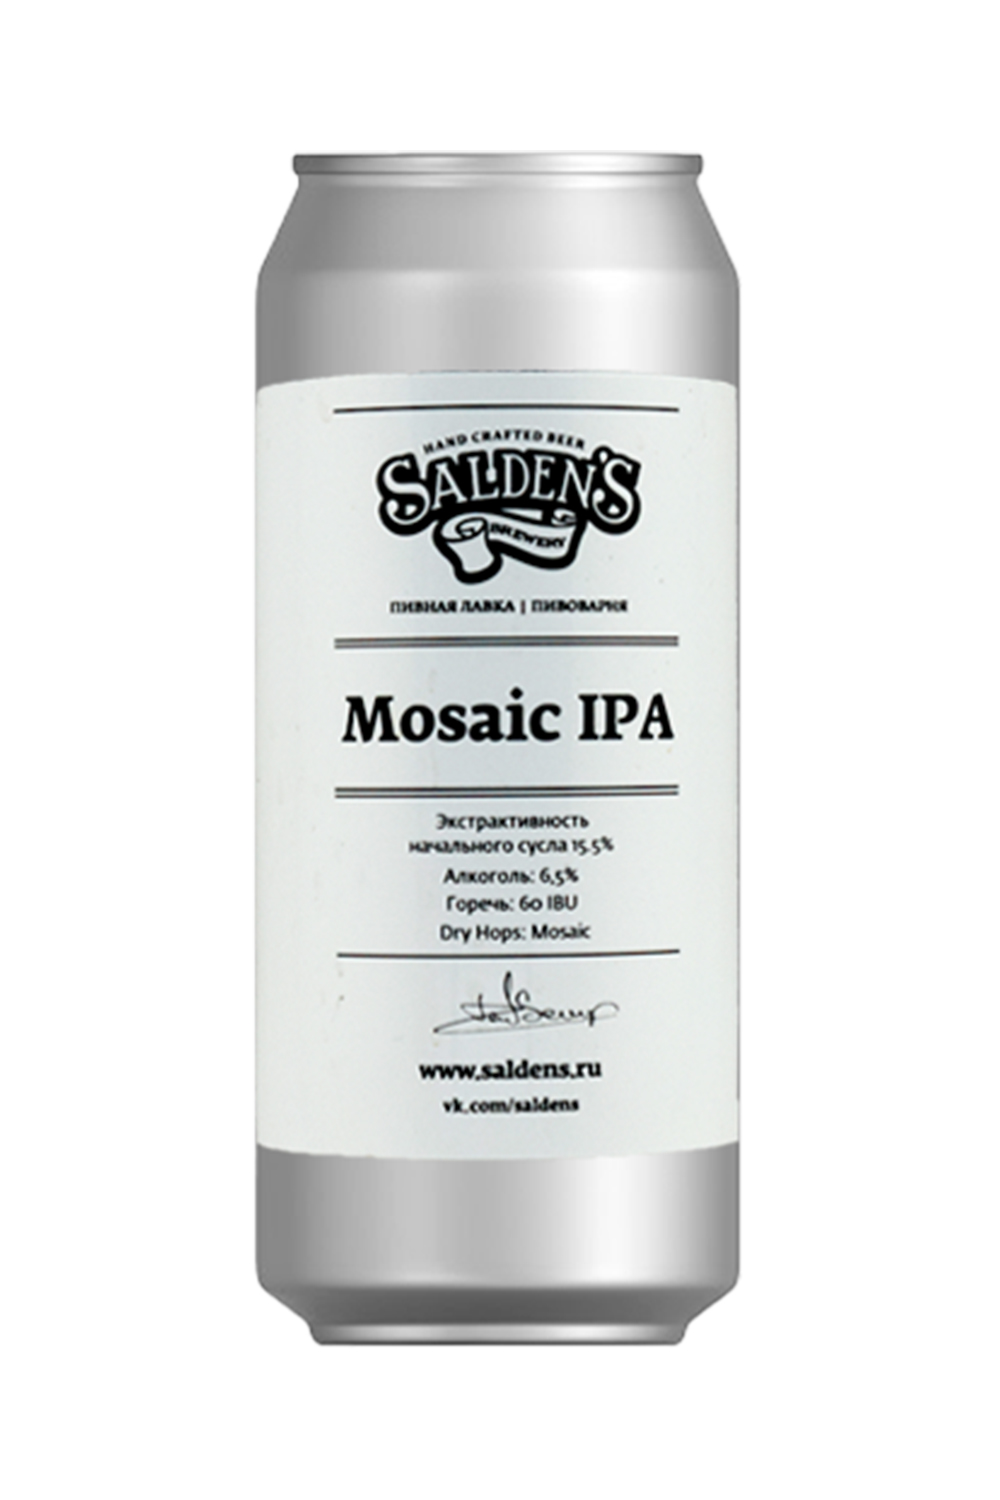 Пиво Мозаик ИПА 7,0% ж/б 0,5 л (Saldens)